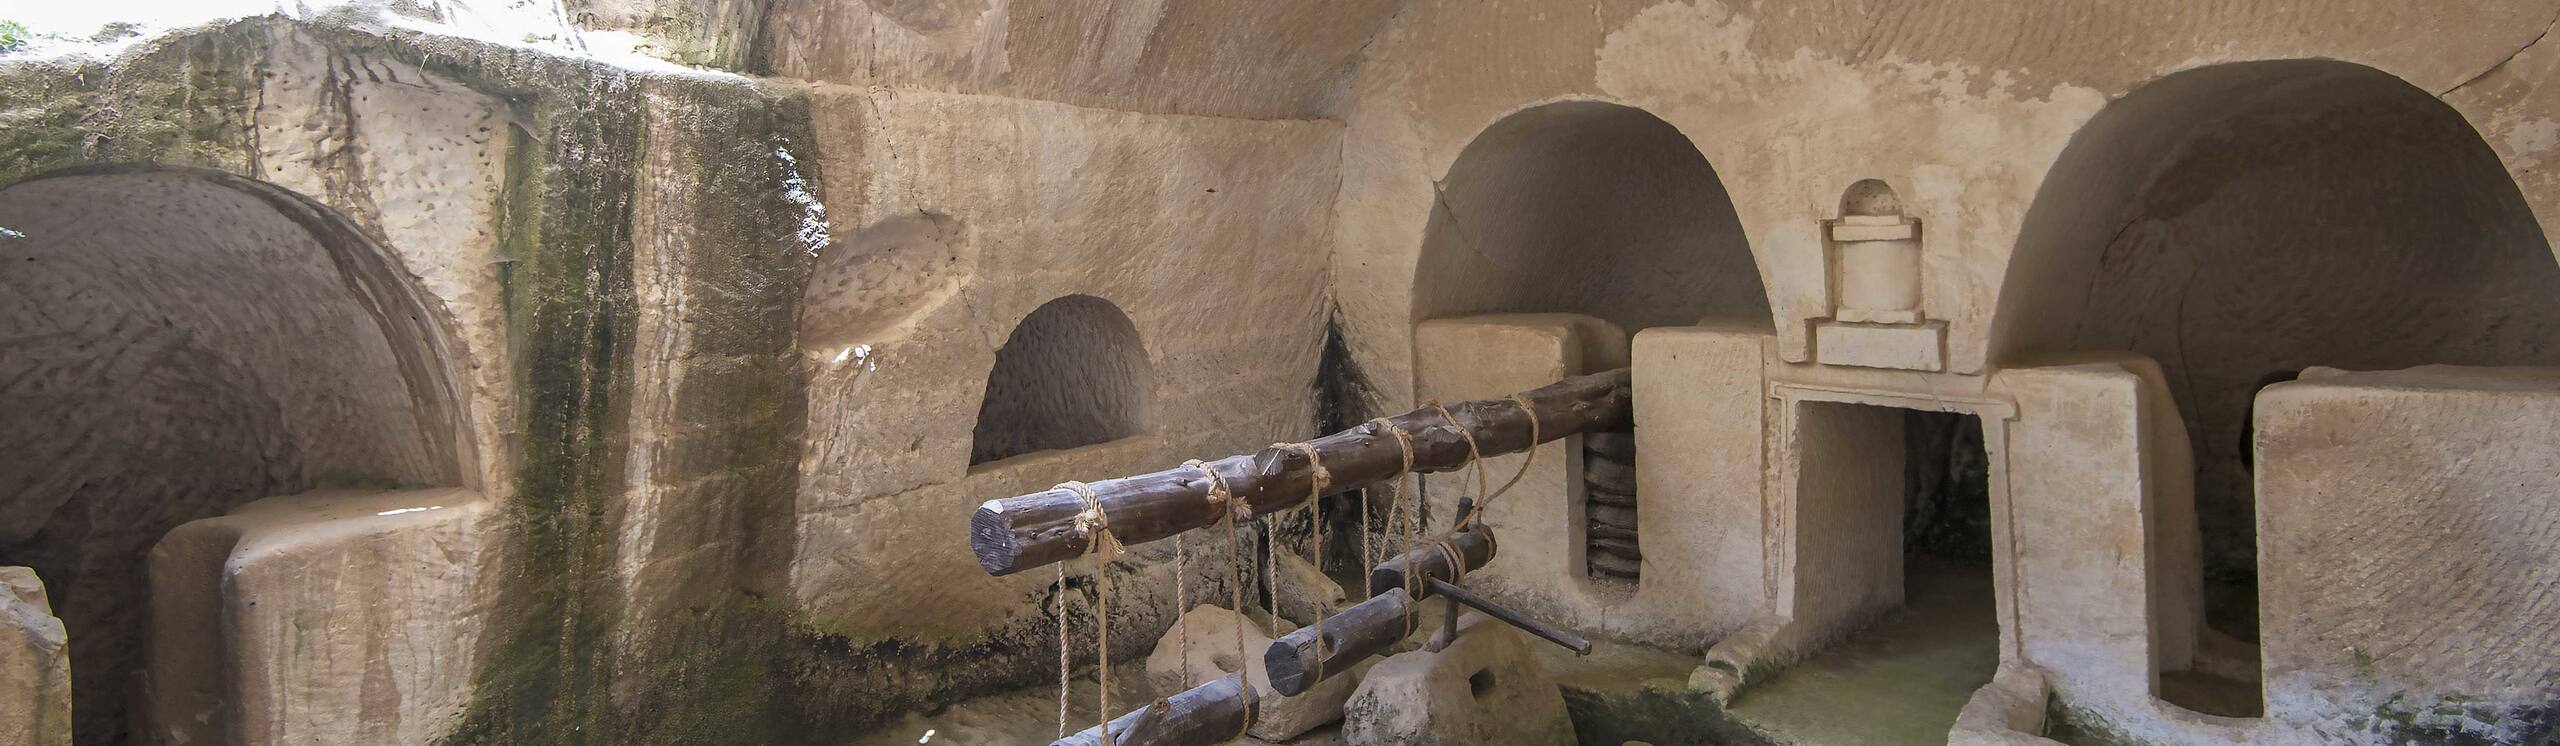 Les grottes de Maresha et de Bet-Guvrin en basse Judée, un microcosme du pays des grottes